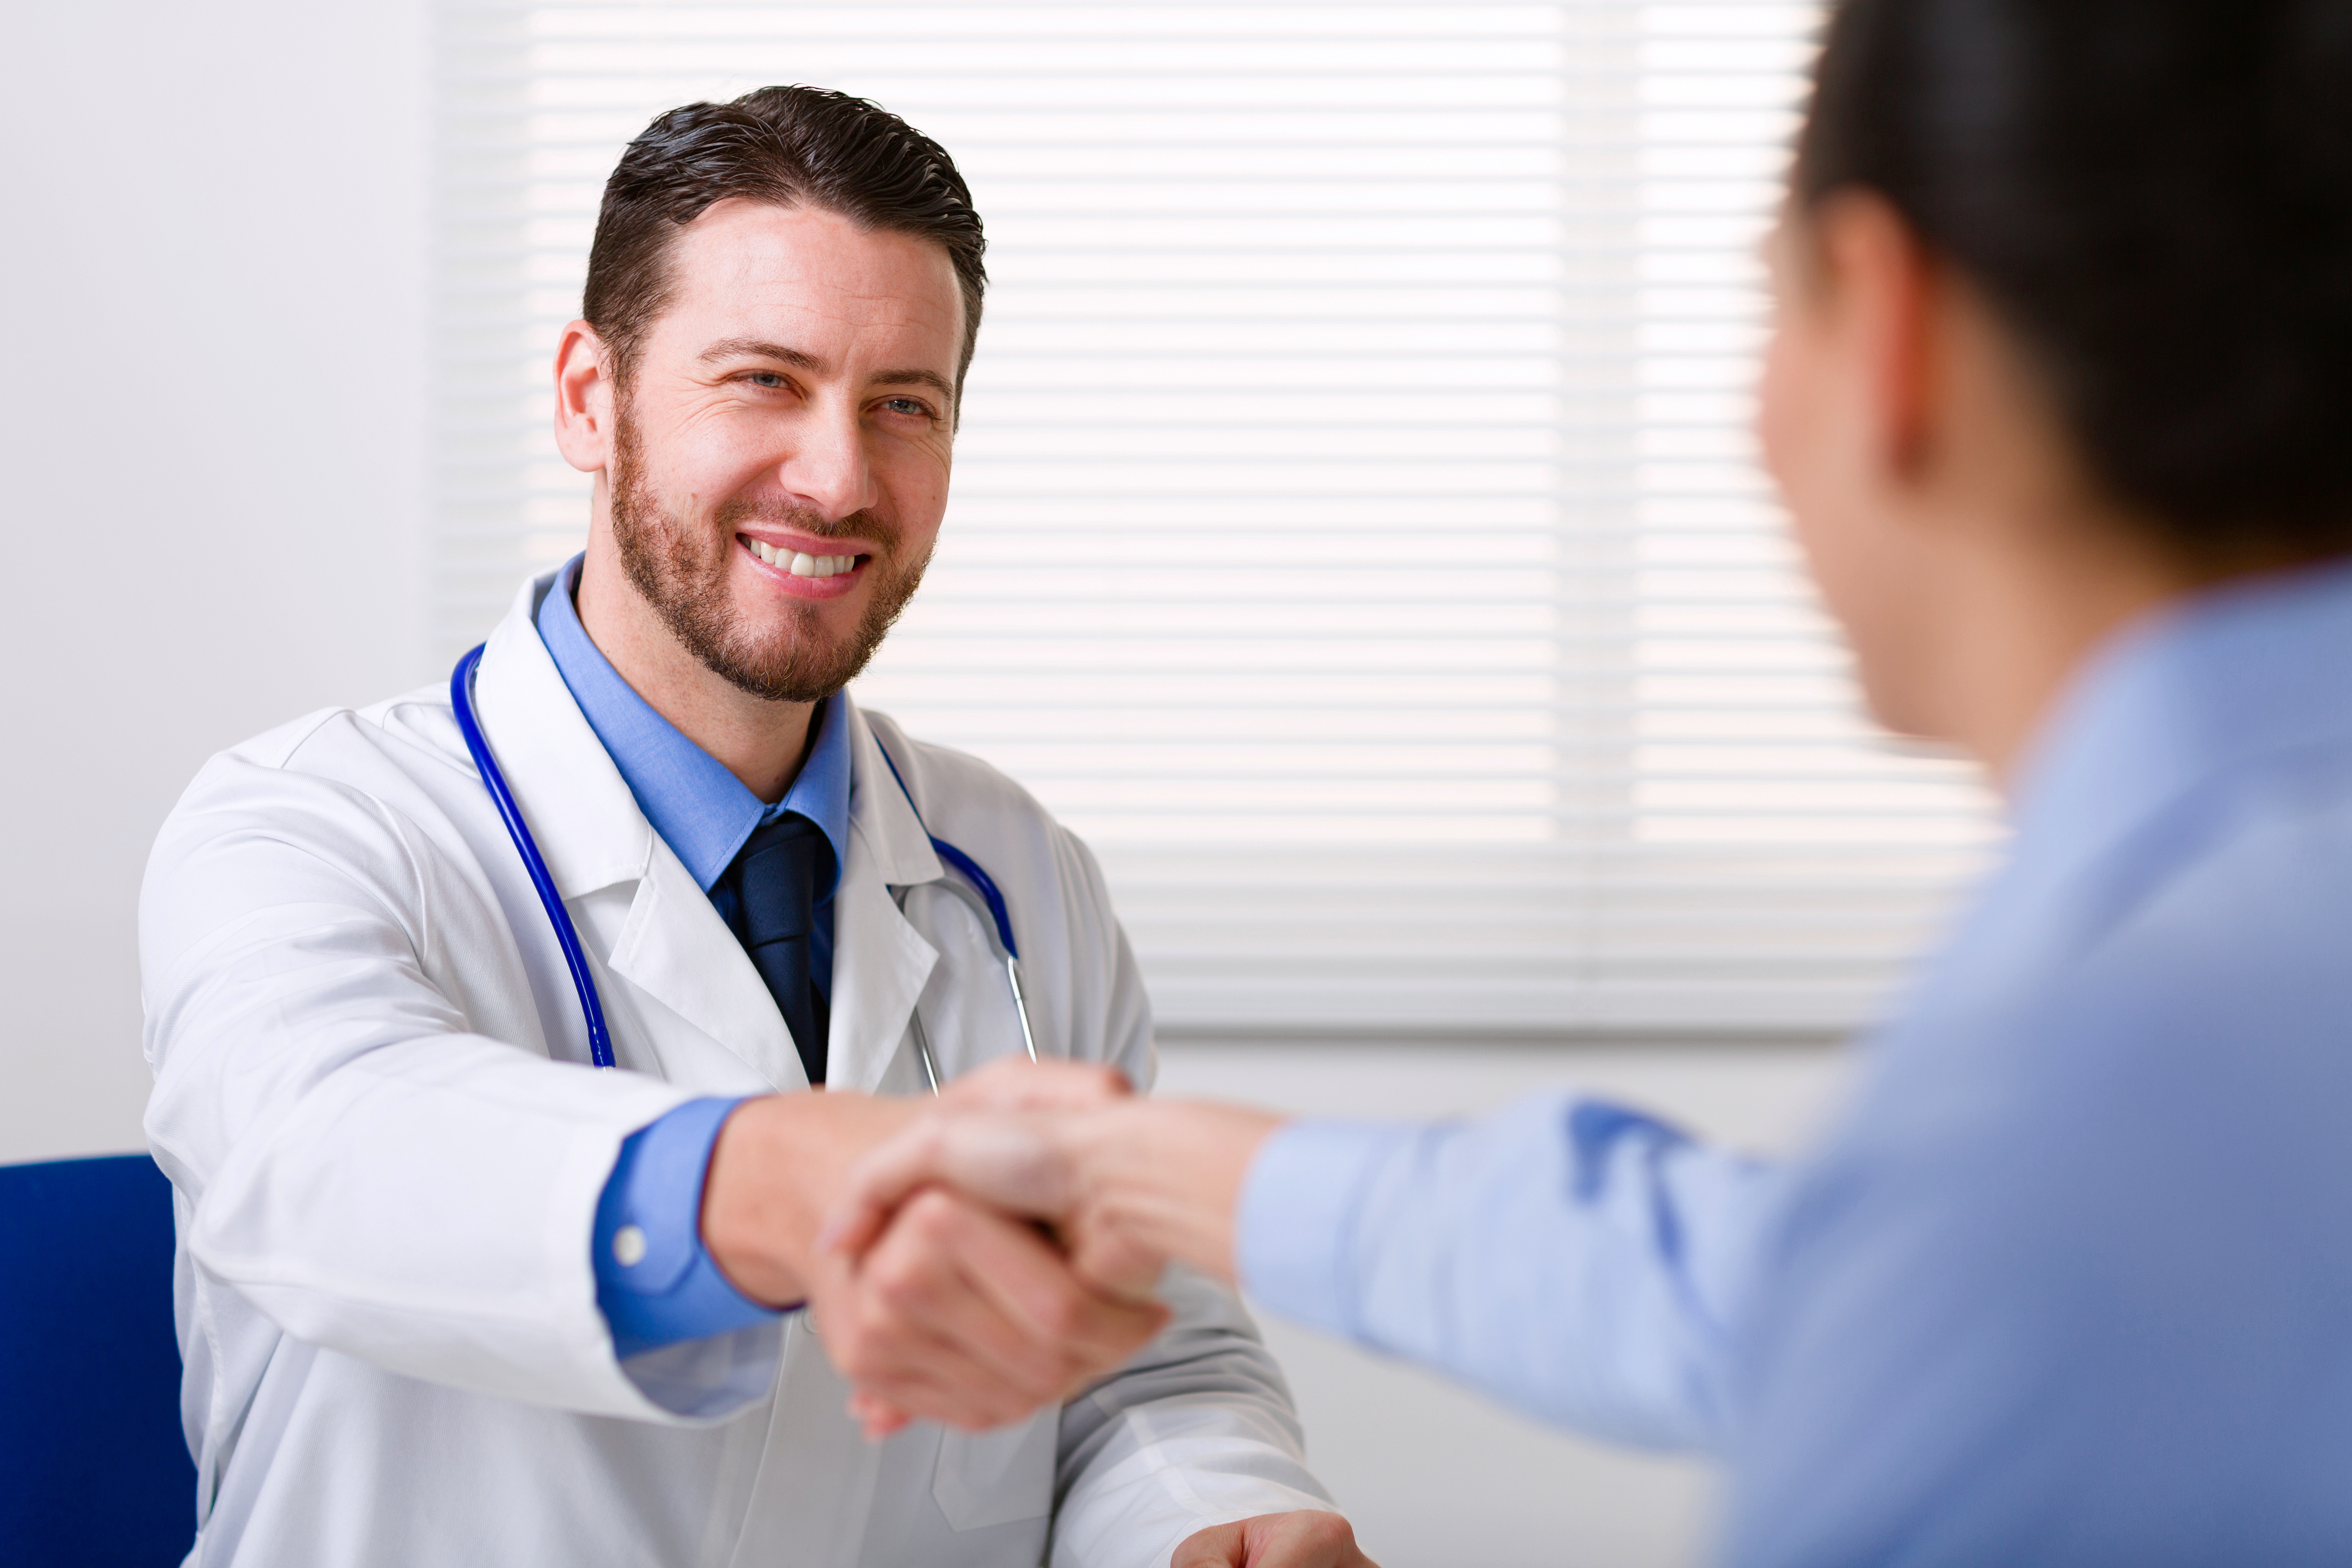 Médico con bata blanca sonriendo mientras estrecha la mano a una mujer. | Fuente: Shutterstock